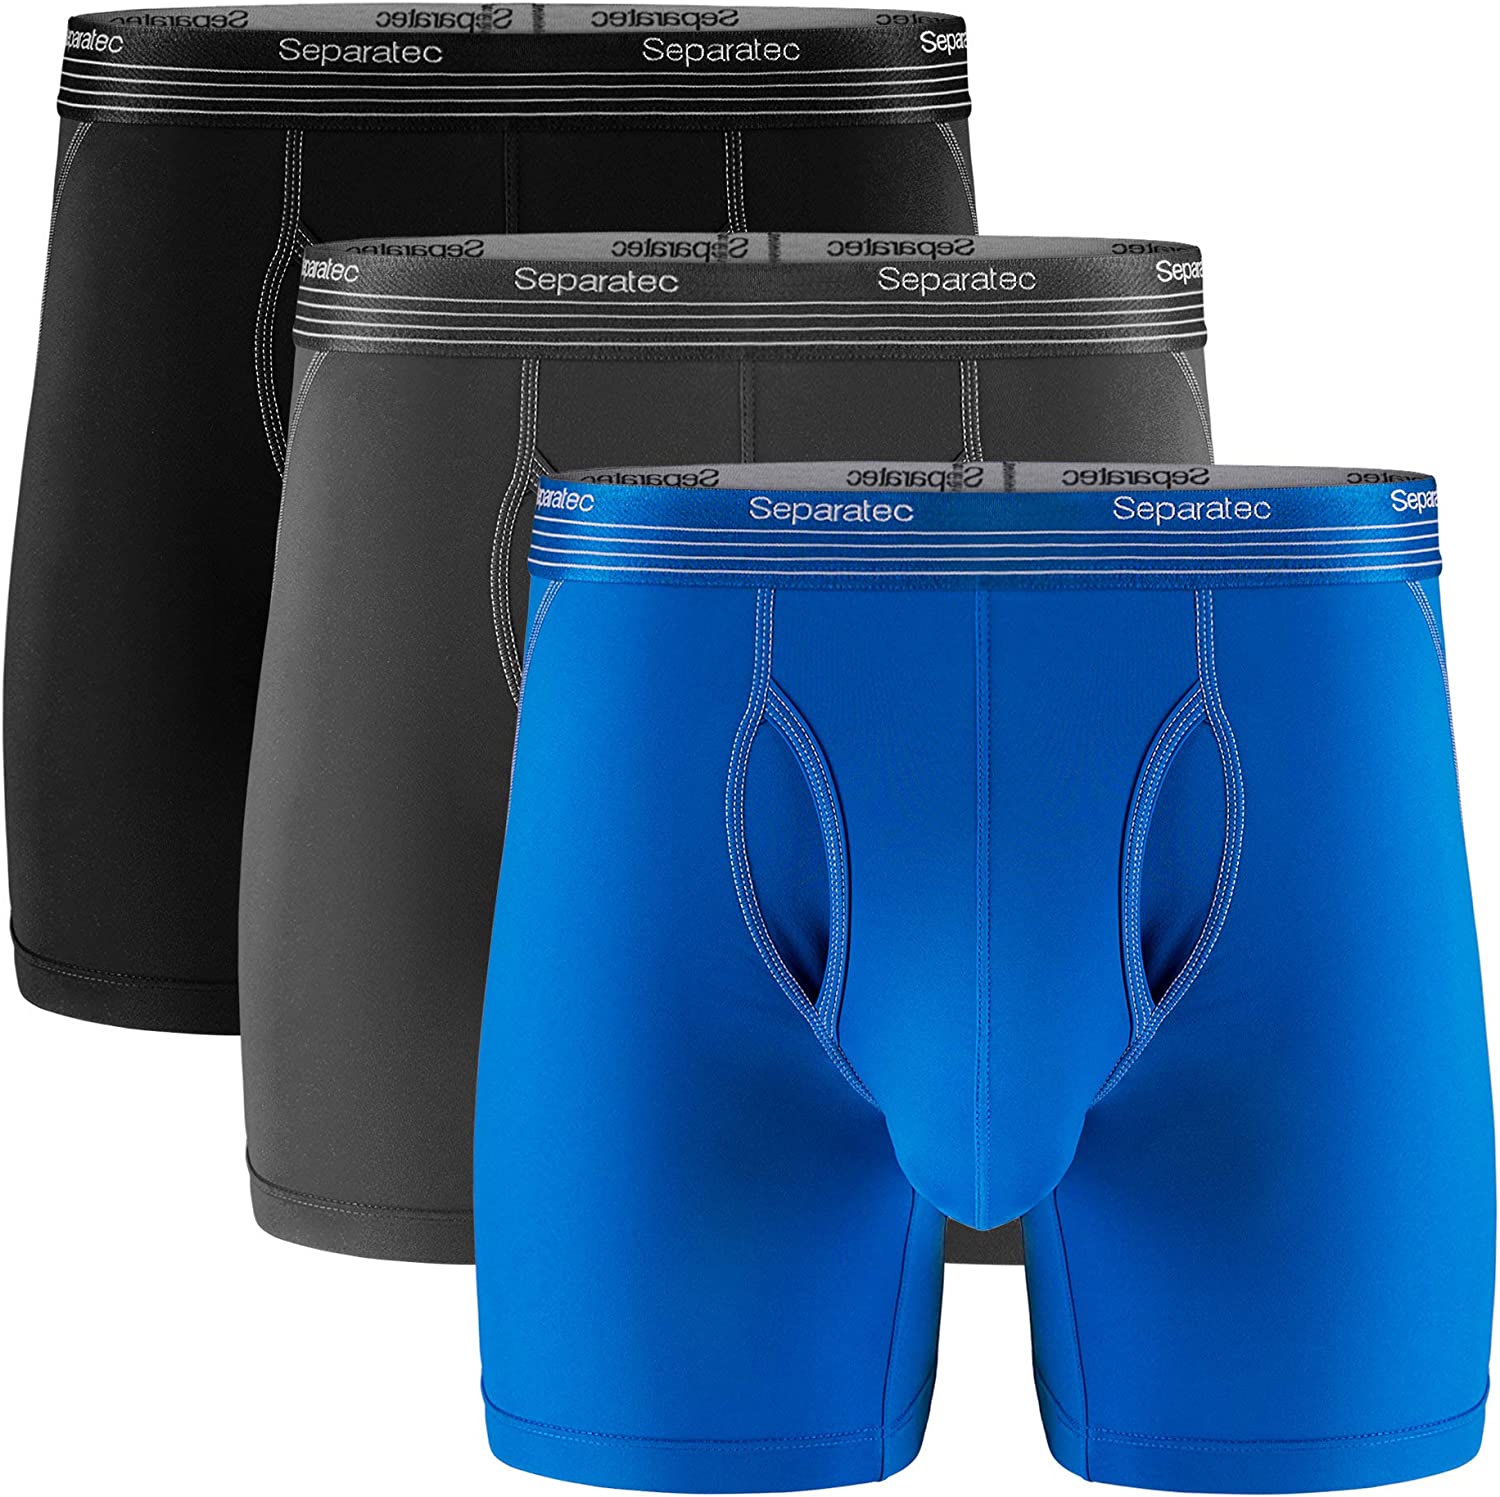 Separatec Dual Pouch Men's Underwear Review 